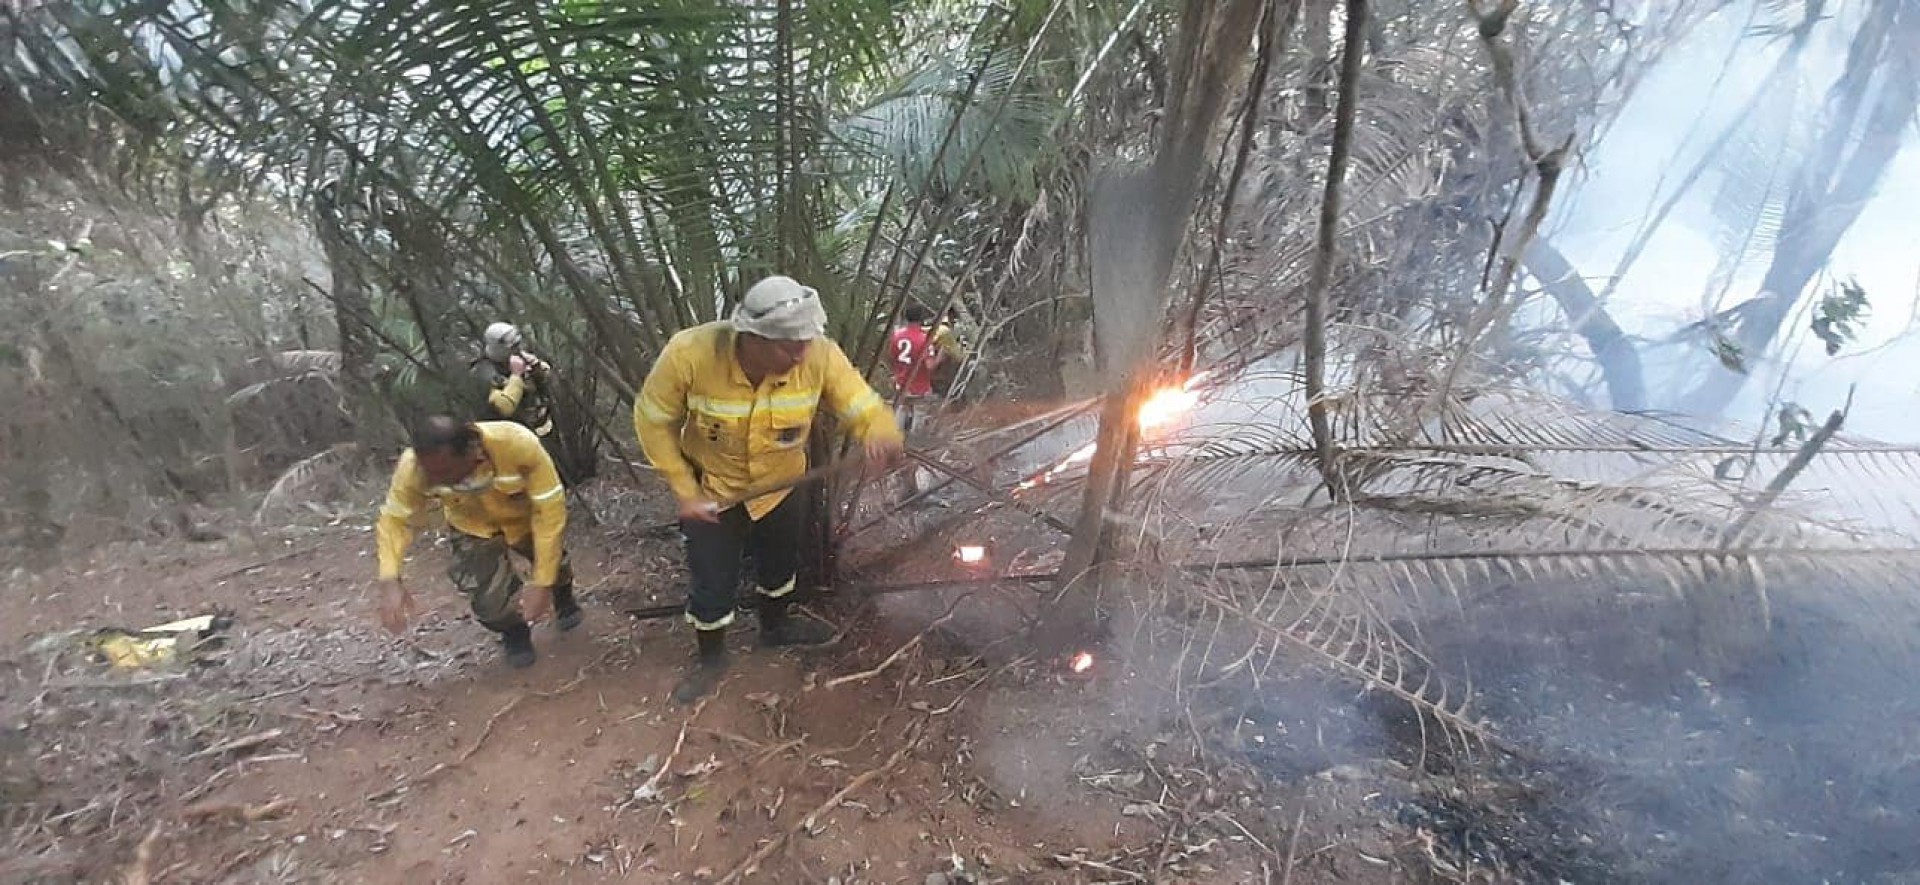 Agentes da Guarda Ambiental de Nova Iguaçu combateram incêndios na mata. - Divulgação